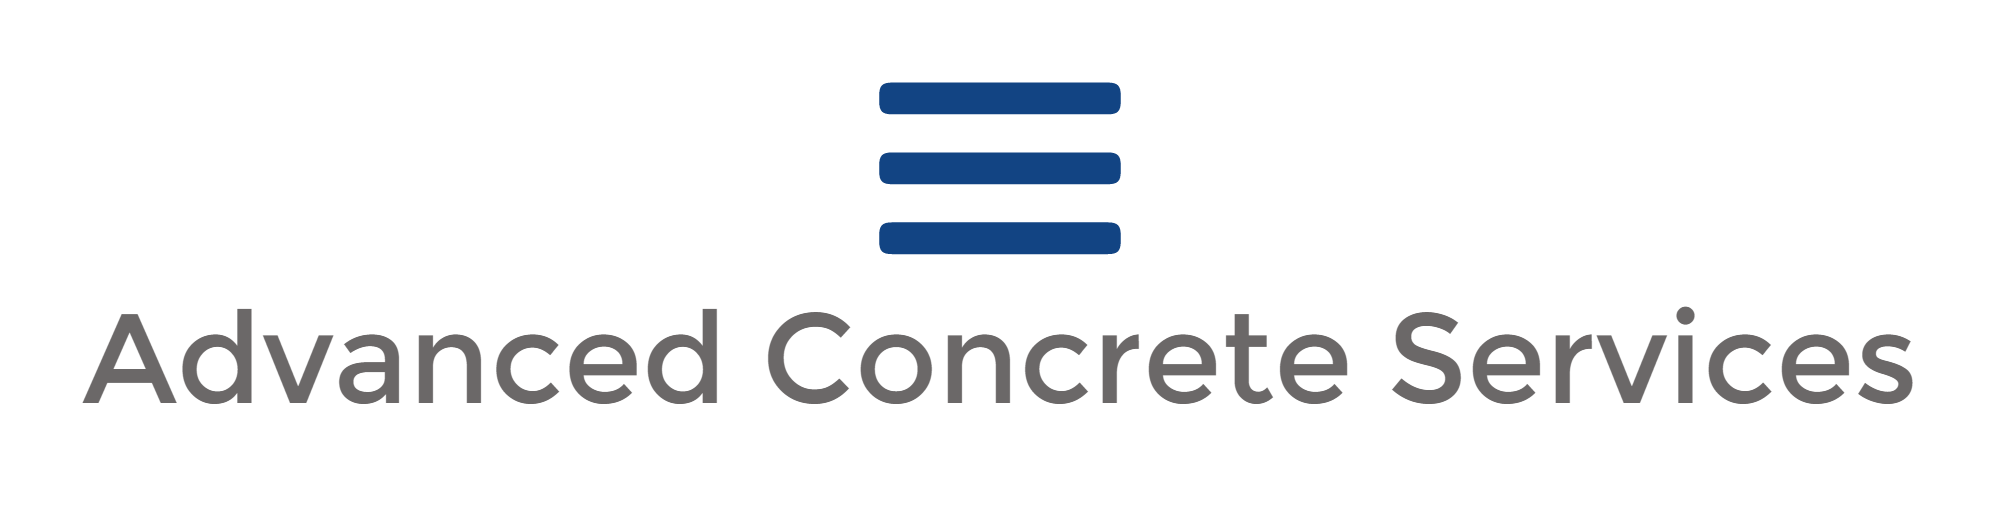 Advanced Concrete Services $500.png